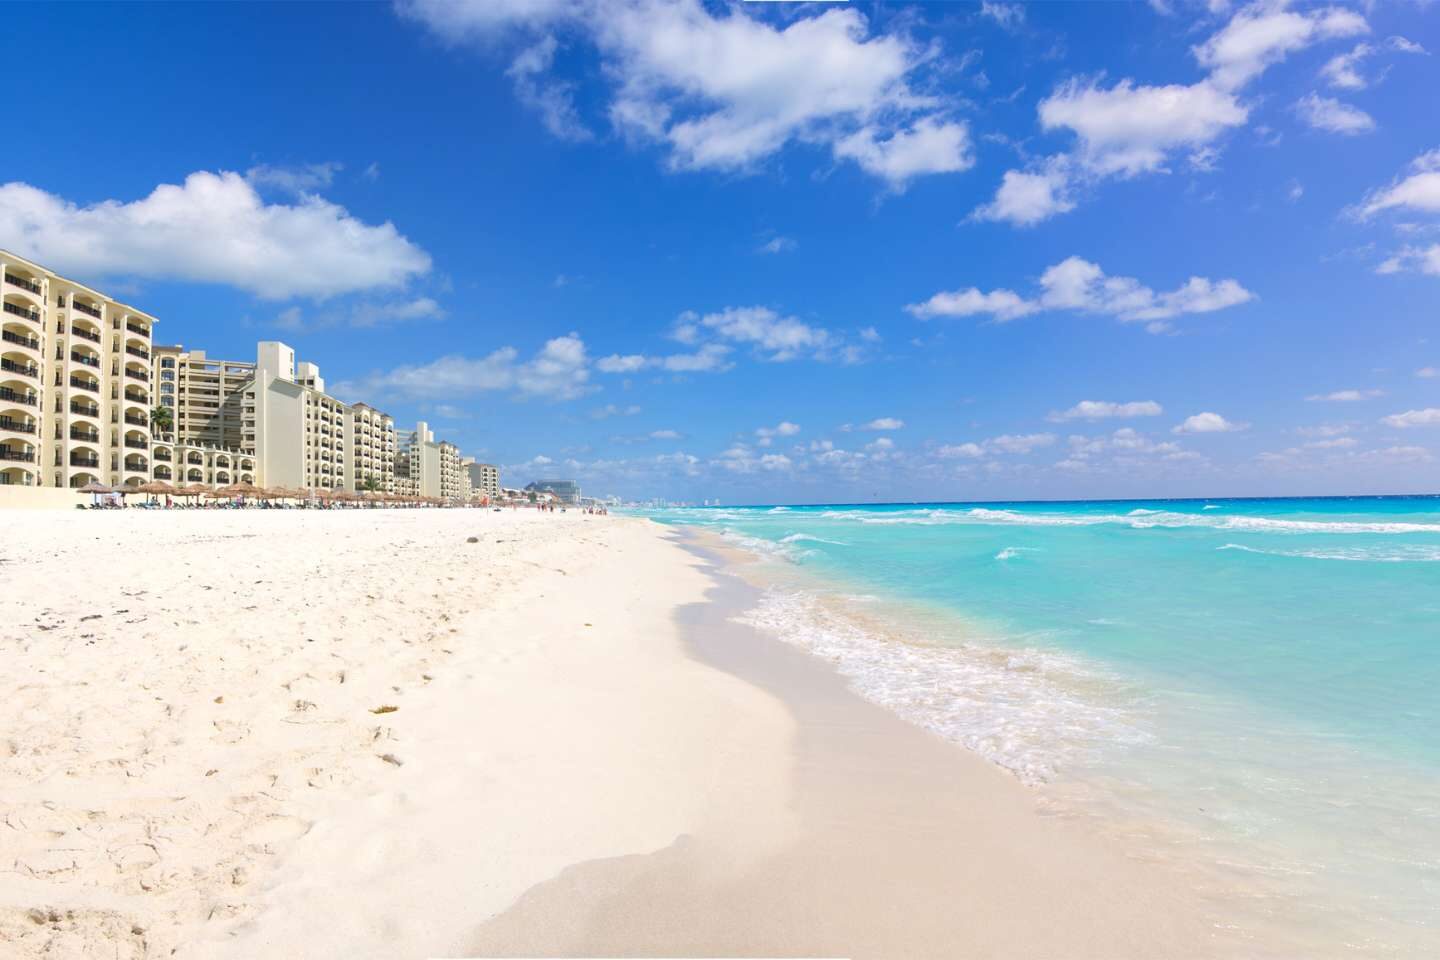 White sand beach of Cancun, Mexico